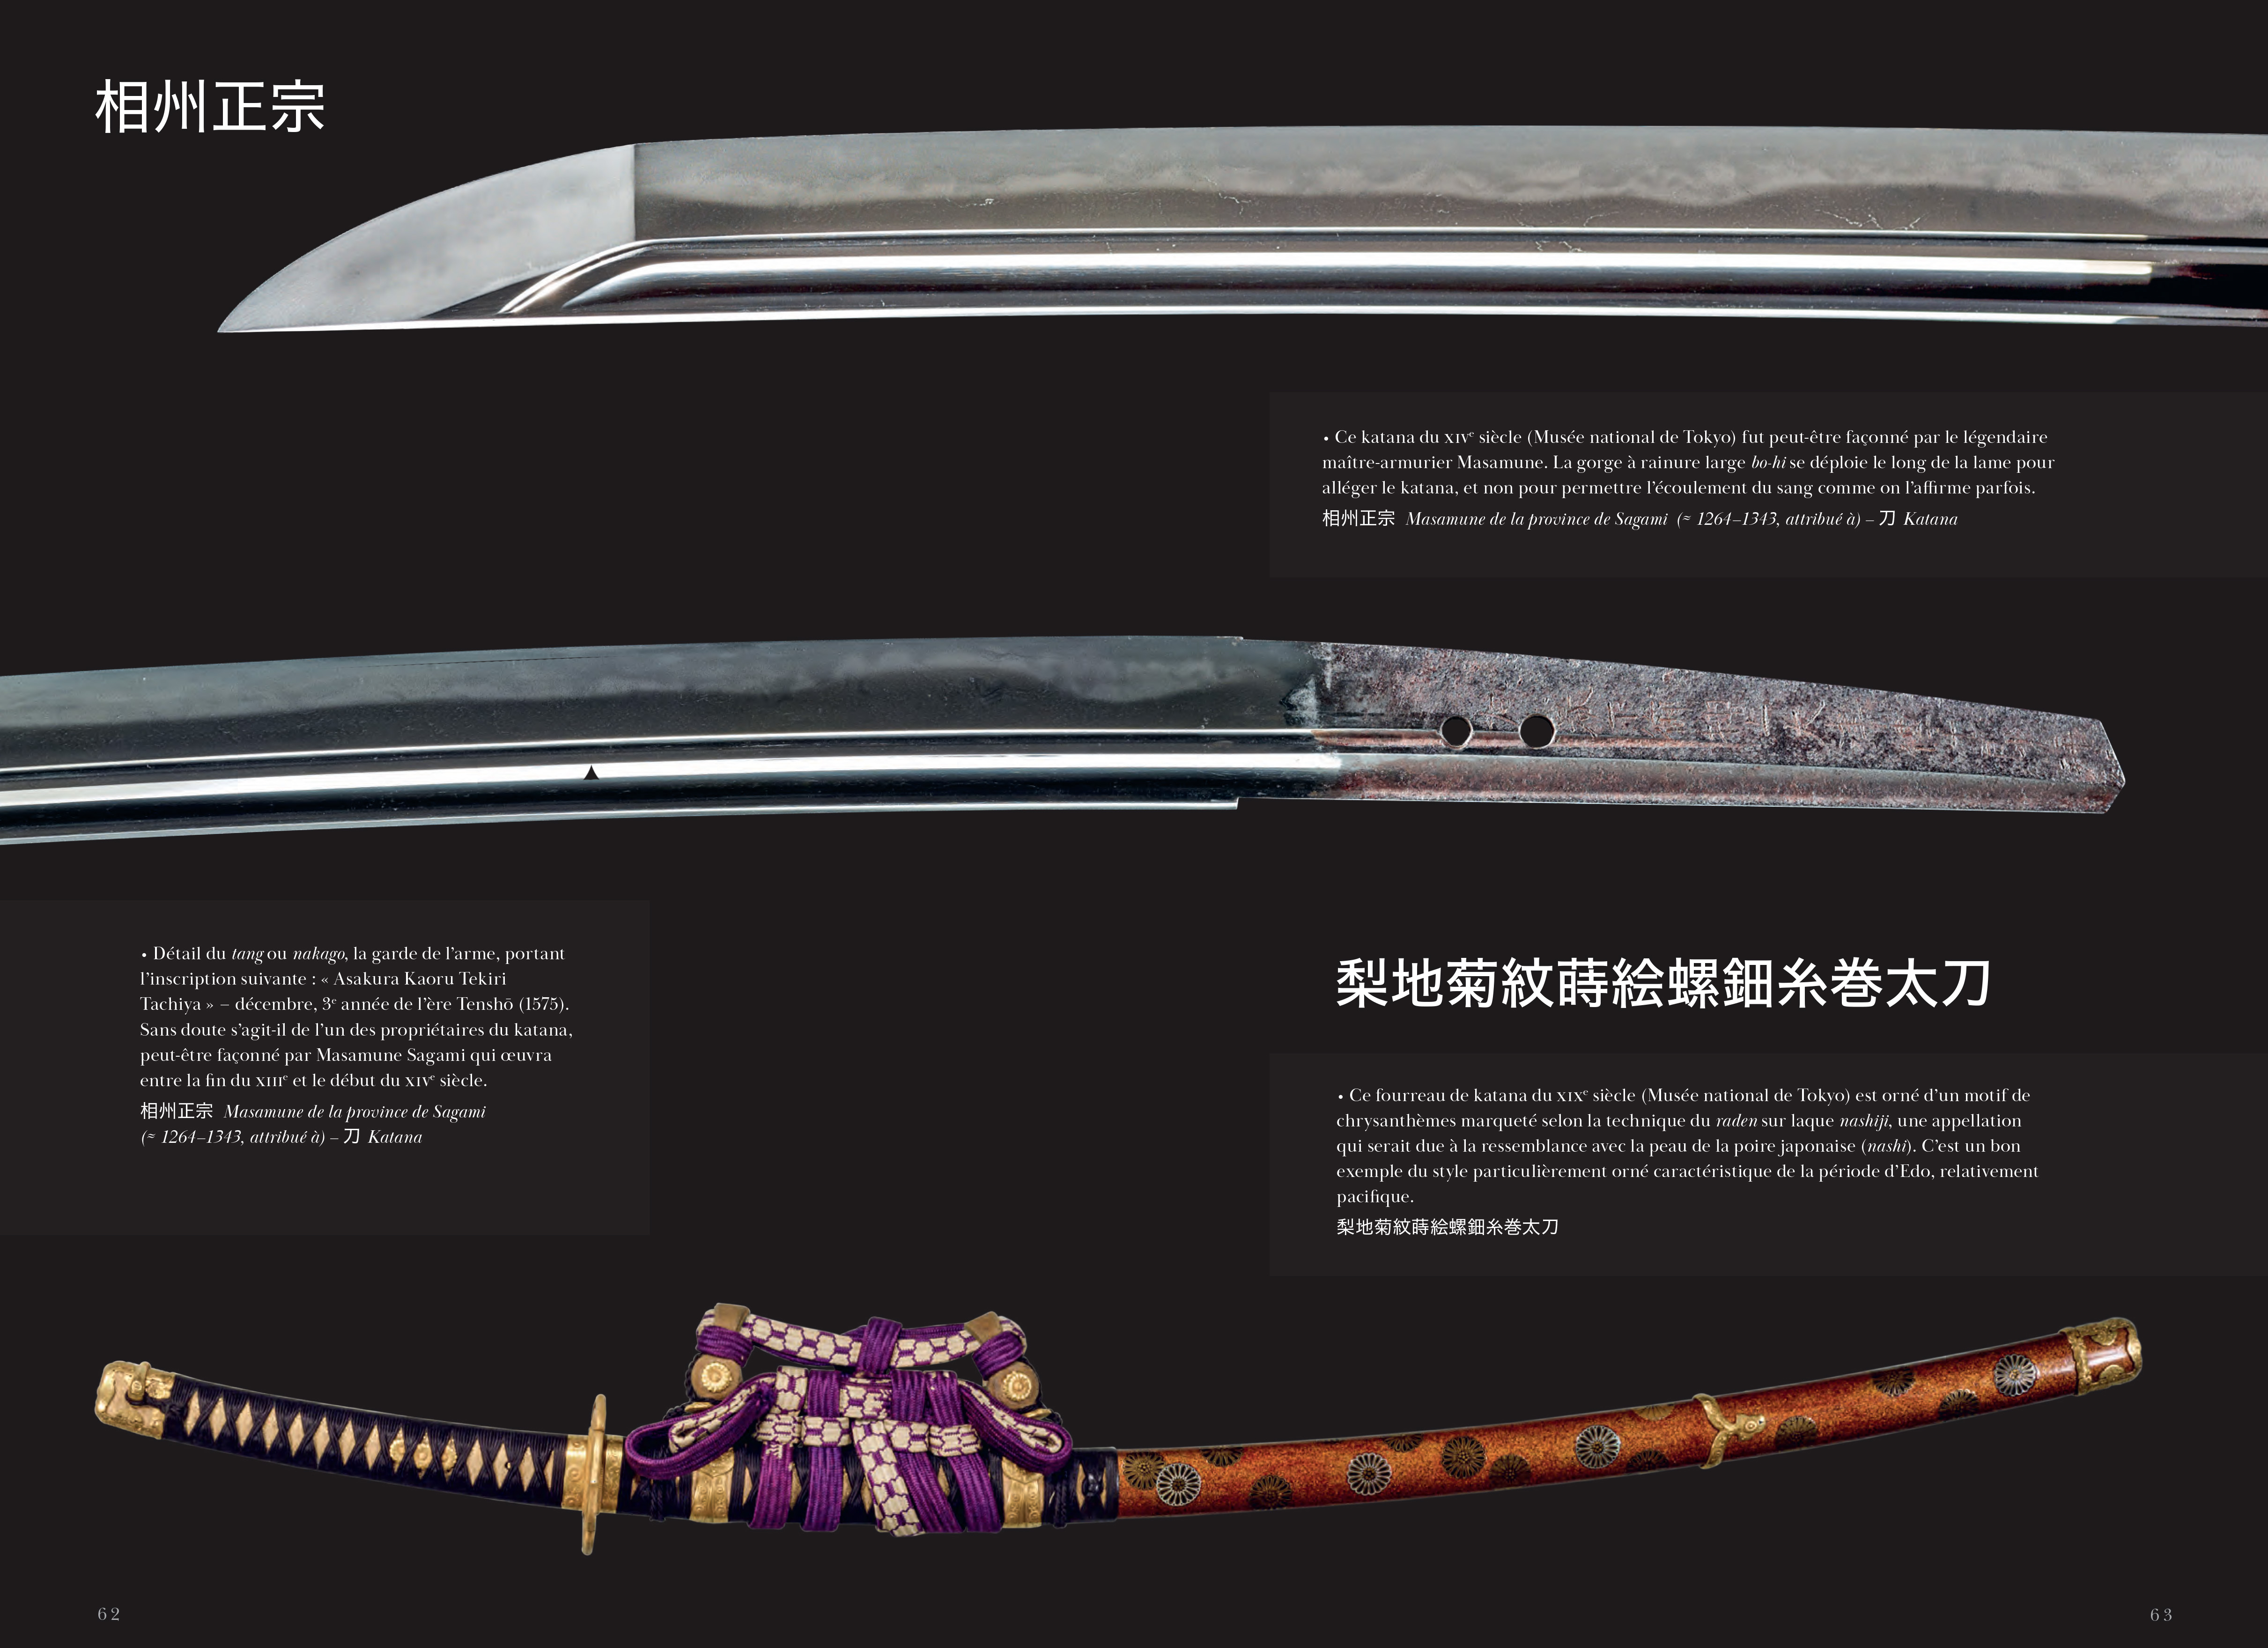 Samourais : De L'ukiyo-E A La Culture Pop